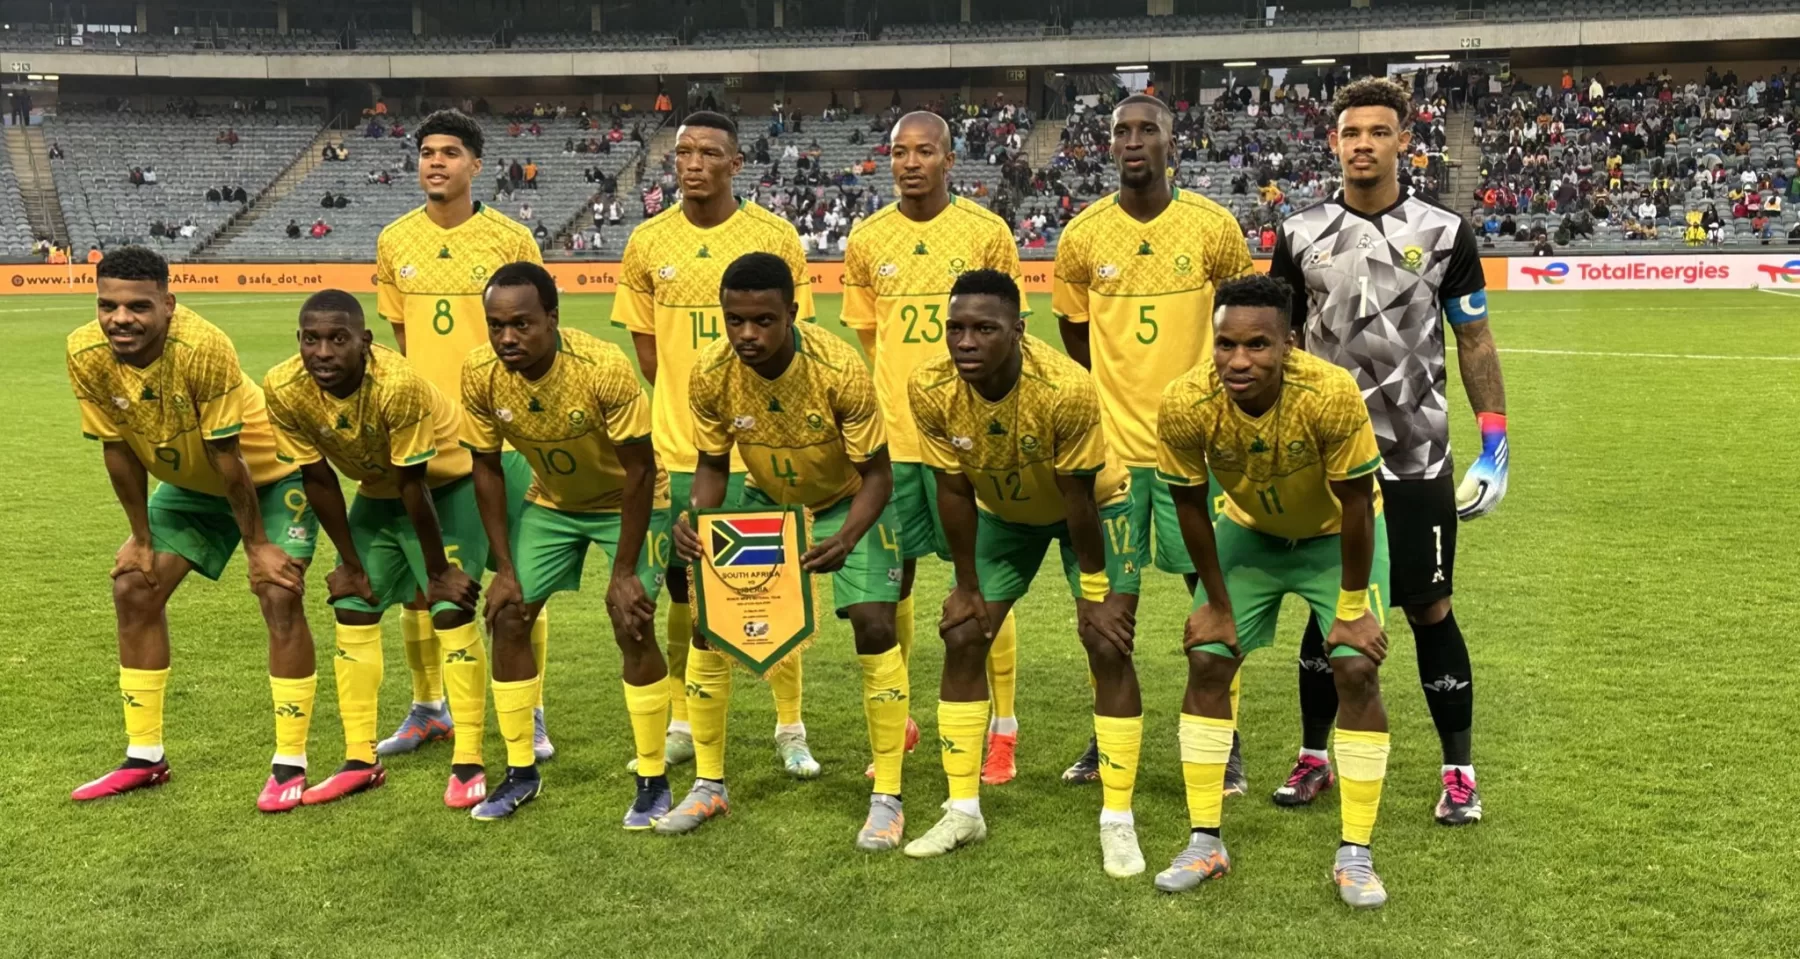 Why Bafana Bafana doesn't need motivation against Morocco